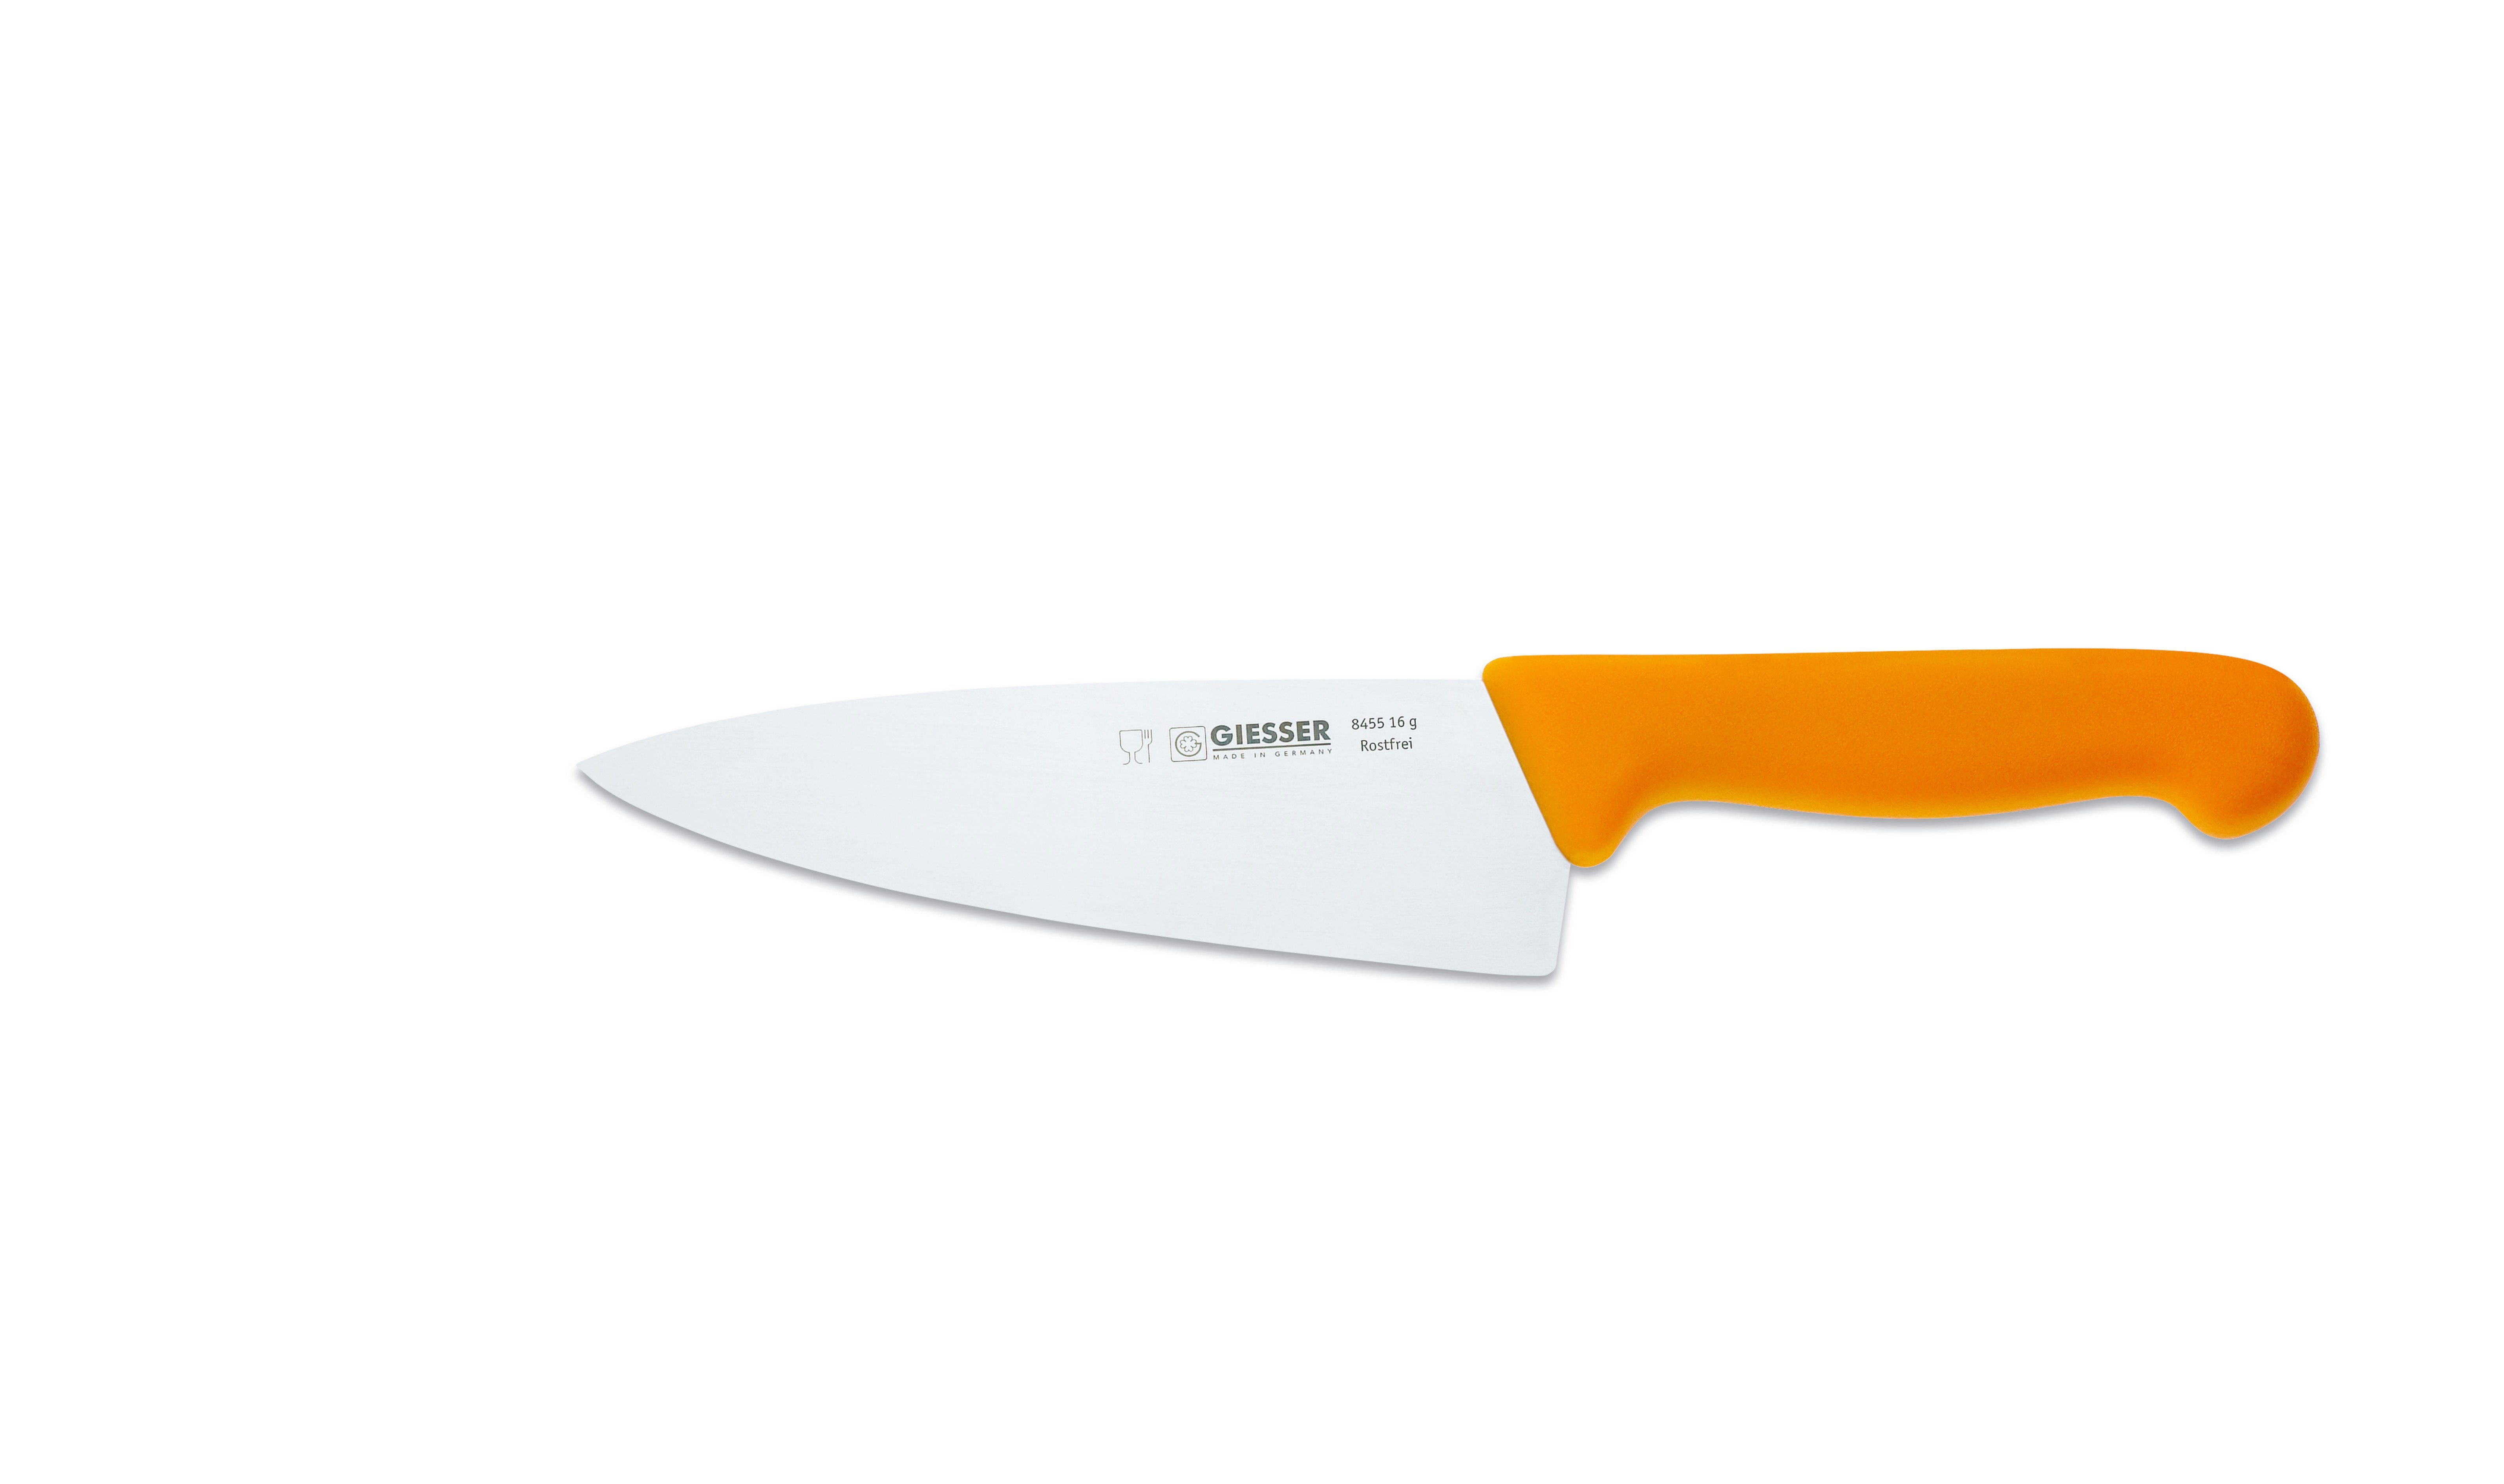 Giesser Messer Kochmesser Küchenmesser breit 8455, Rostfrei, breite Form, scharf, Handabzug, Ideal für jede Küche gelb